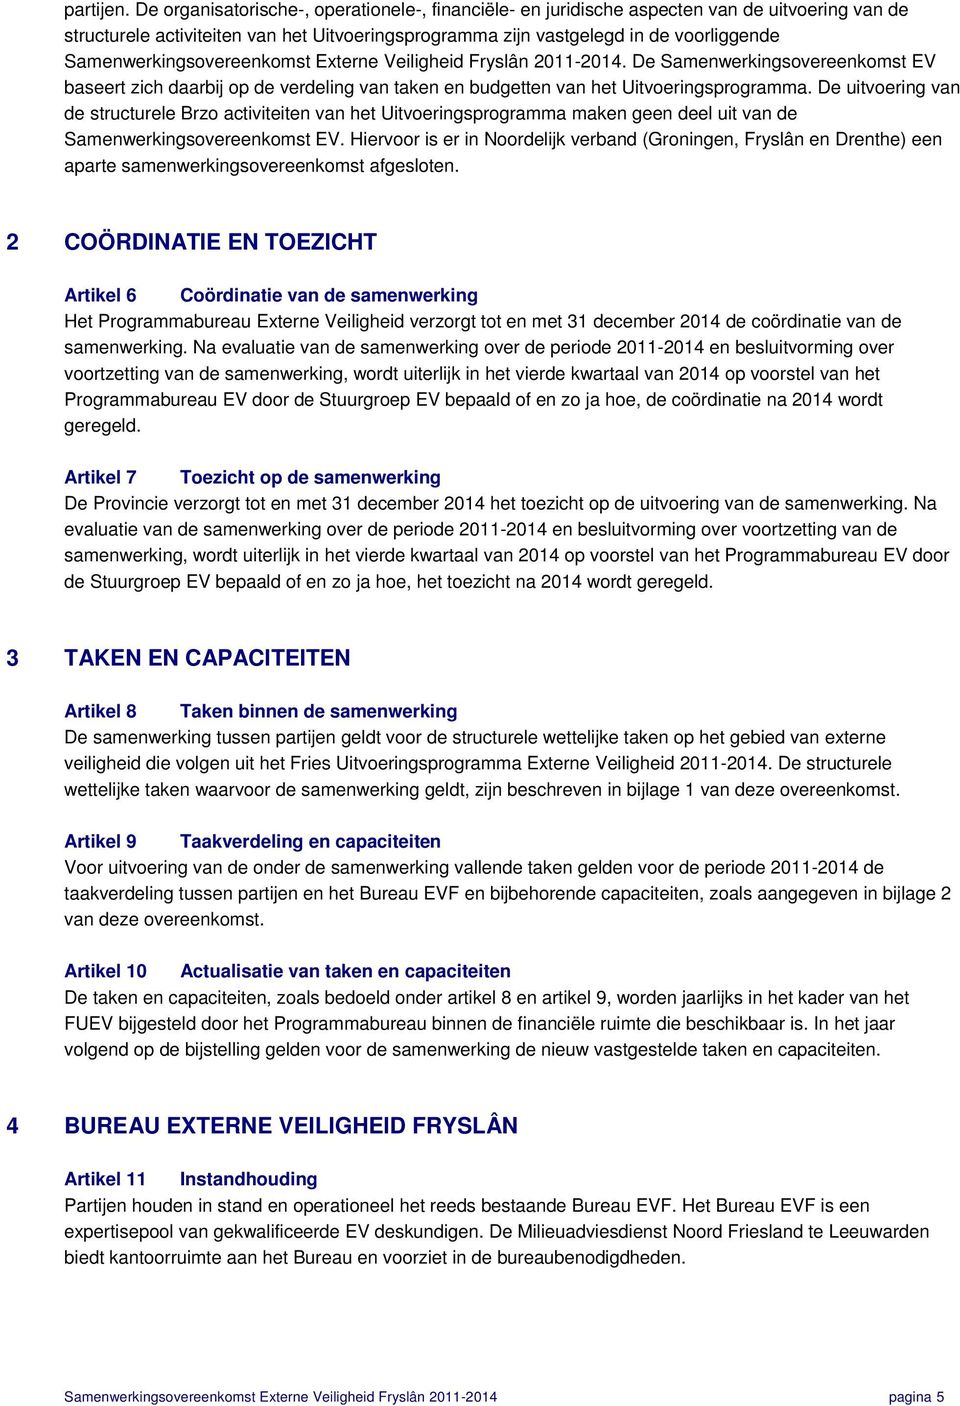 Samenwerkingsovereenkomst Externe Veiligheid Fryslân 2011-2014. De Samenwerkingsovereenkomst EV baseert zich daarbij op de verdeling van taken en budgetten van het Uitvoeringsprogramma.